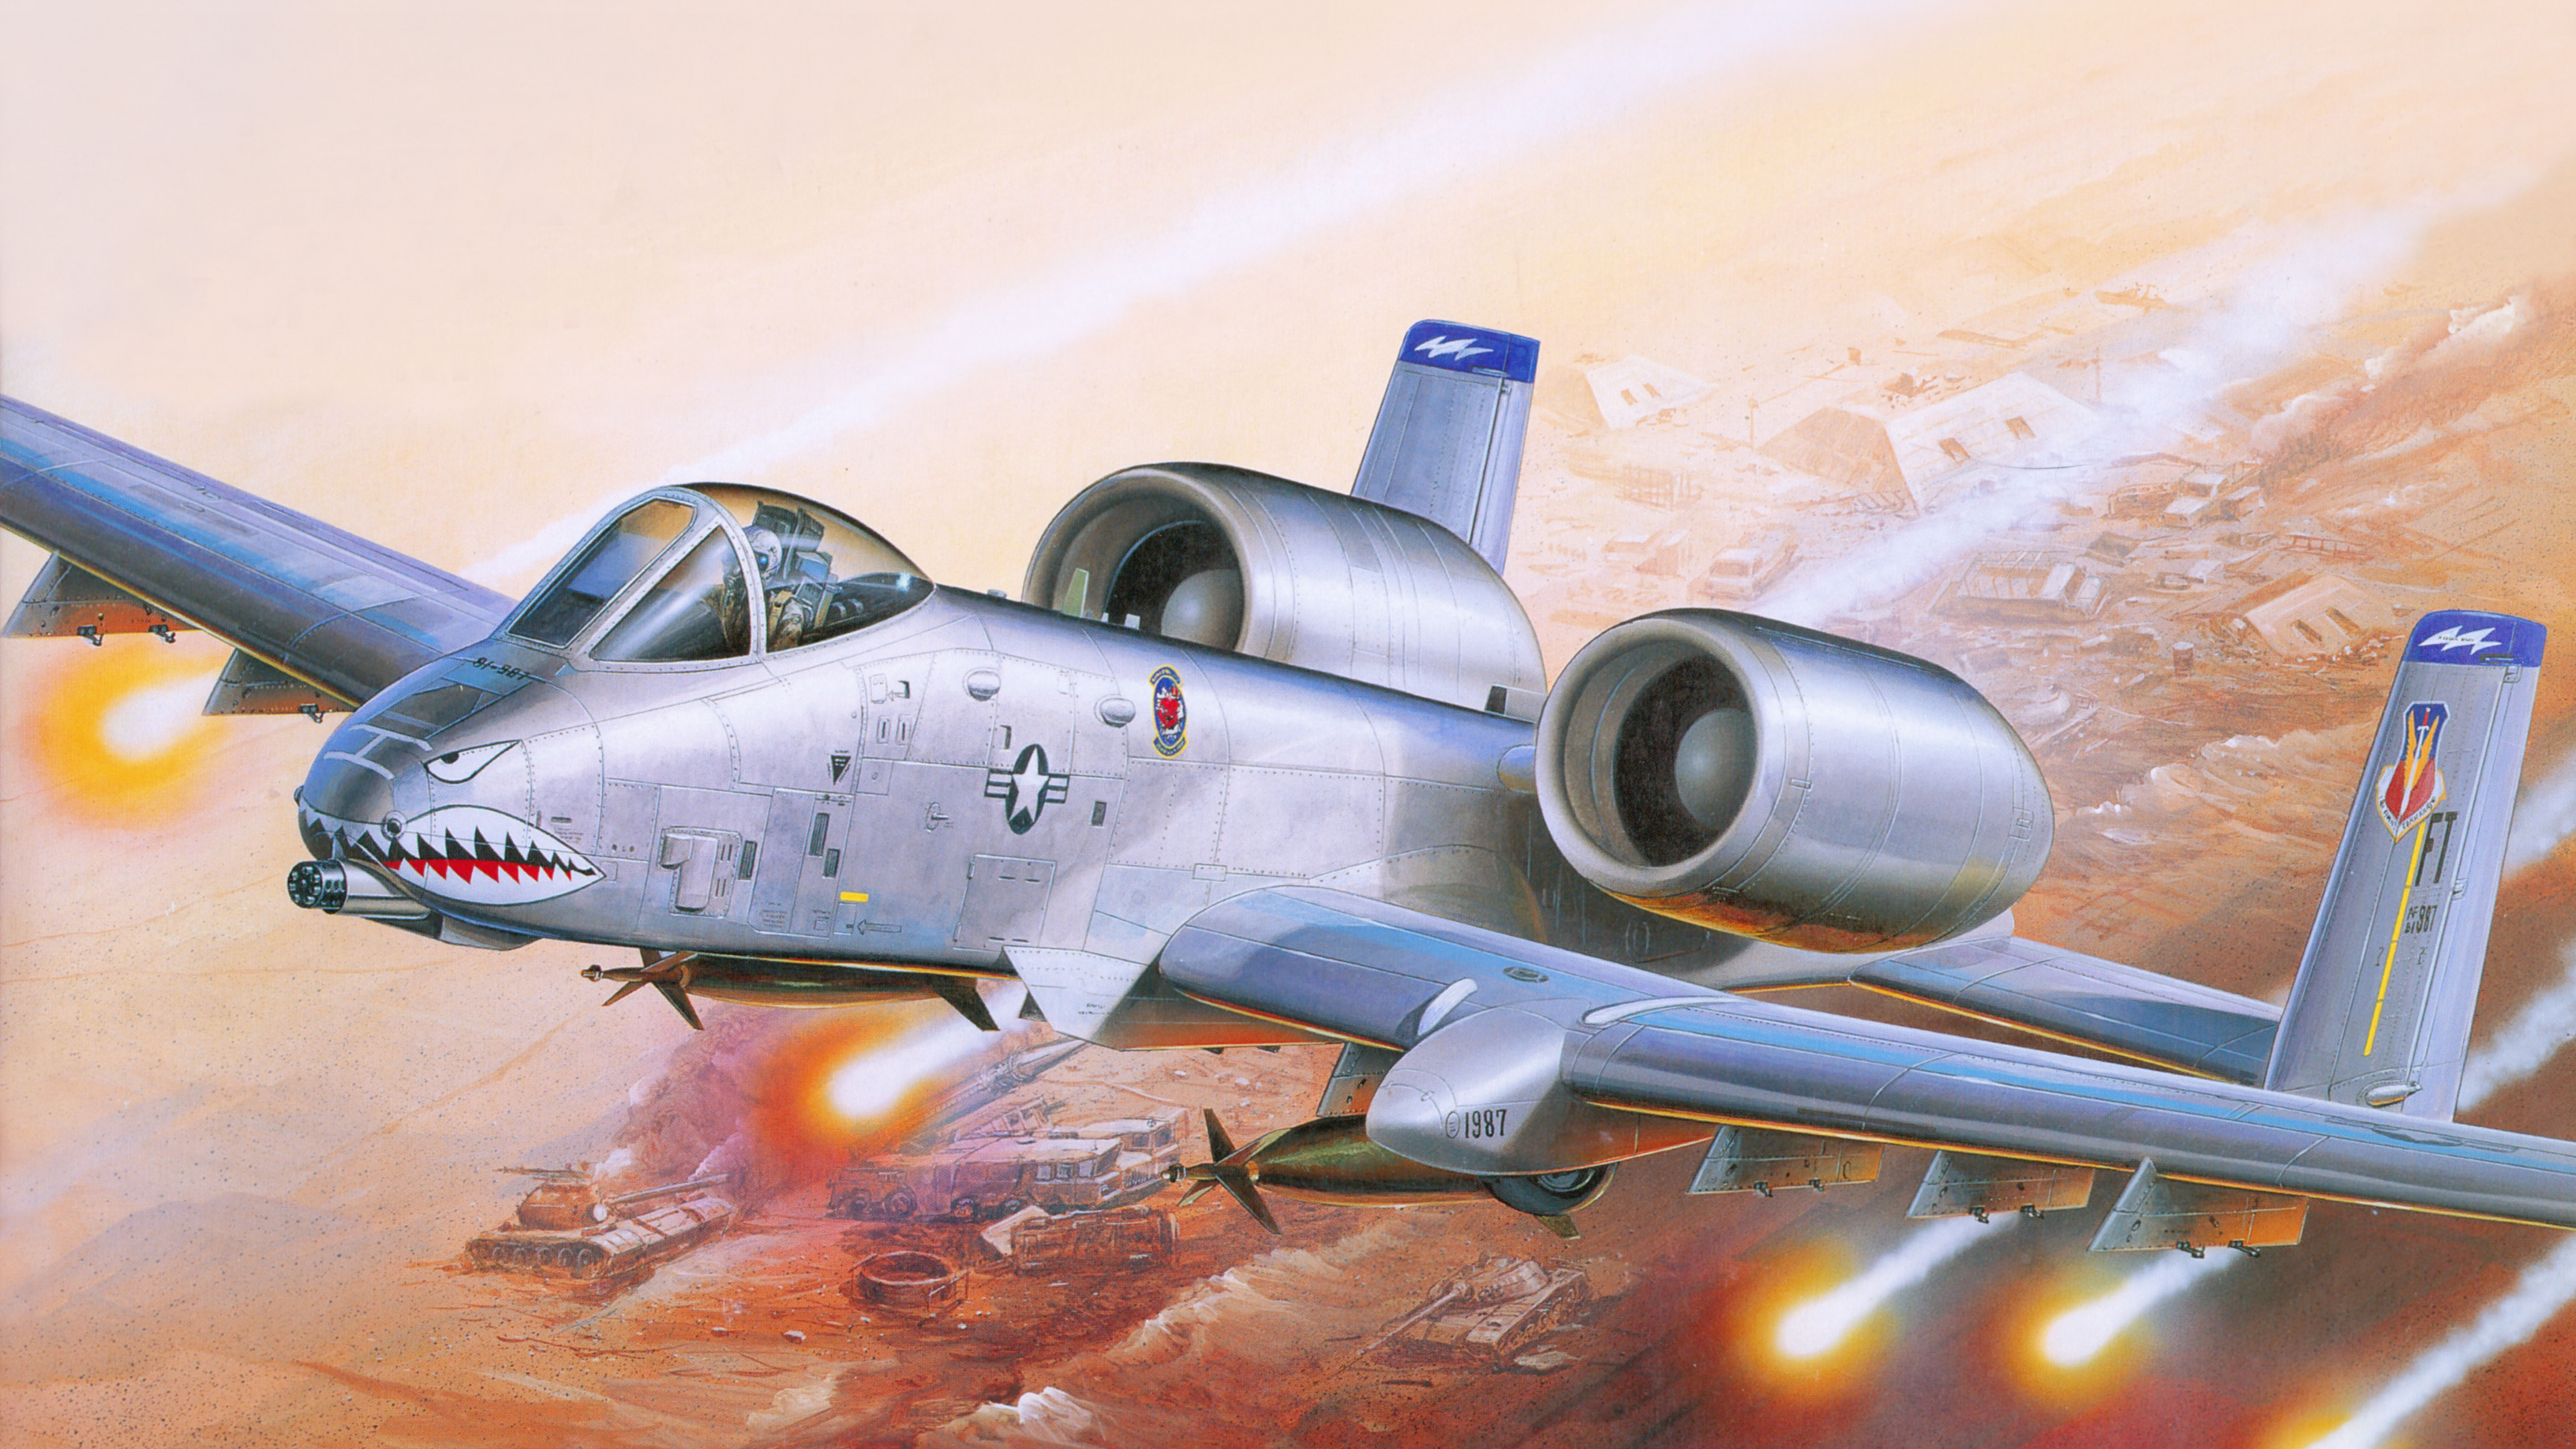 塑料模型, 航空, 喷气式飞机, 军用飞机, 空军 壁纸 3840x2160 允许